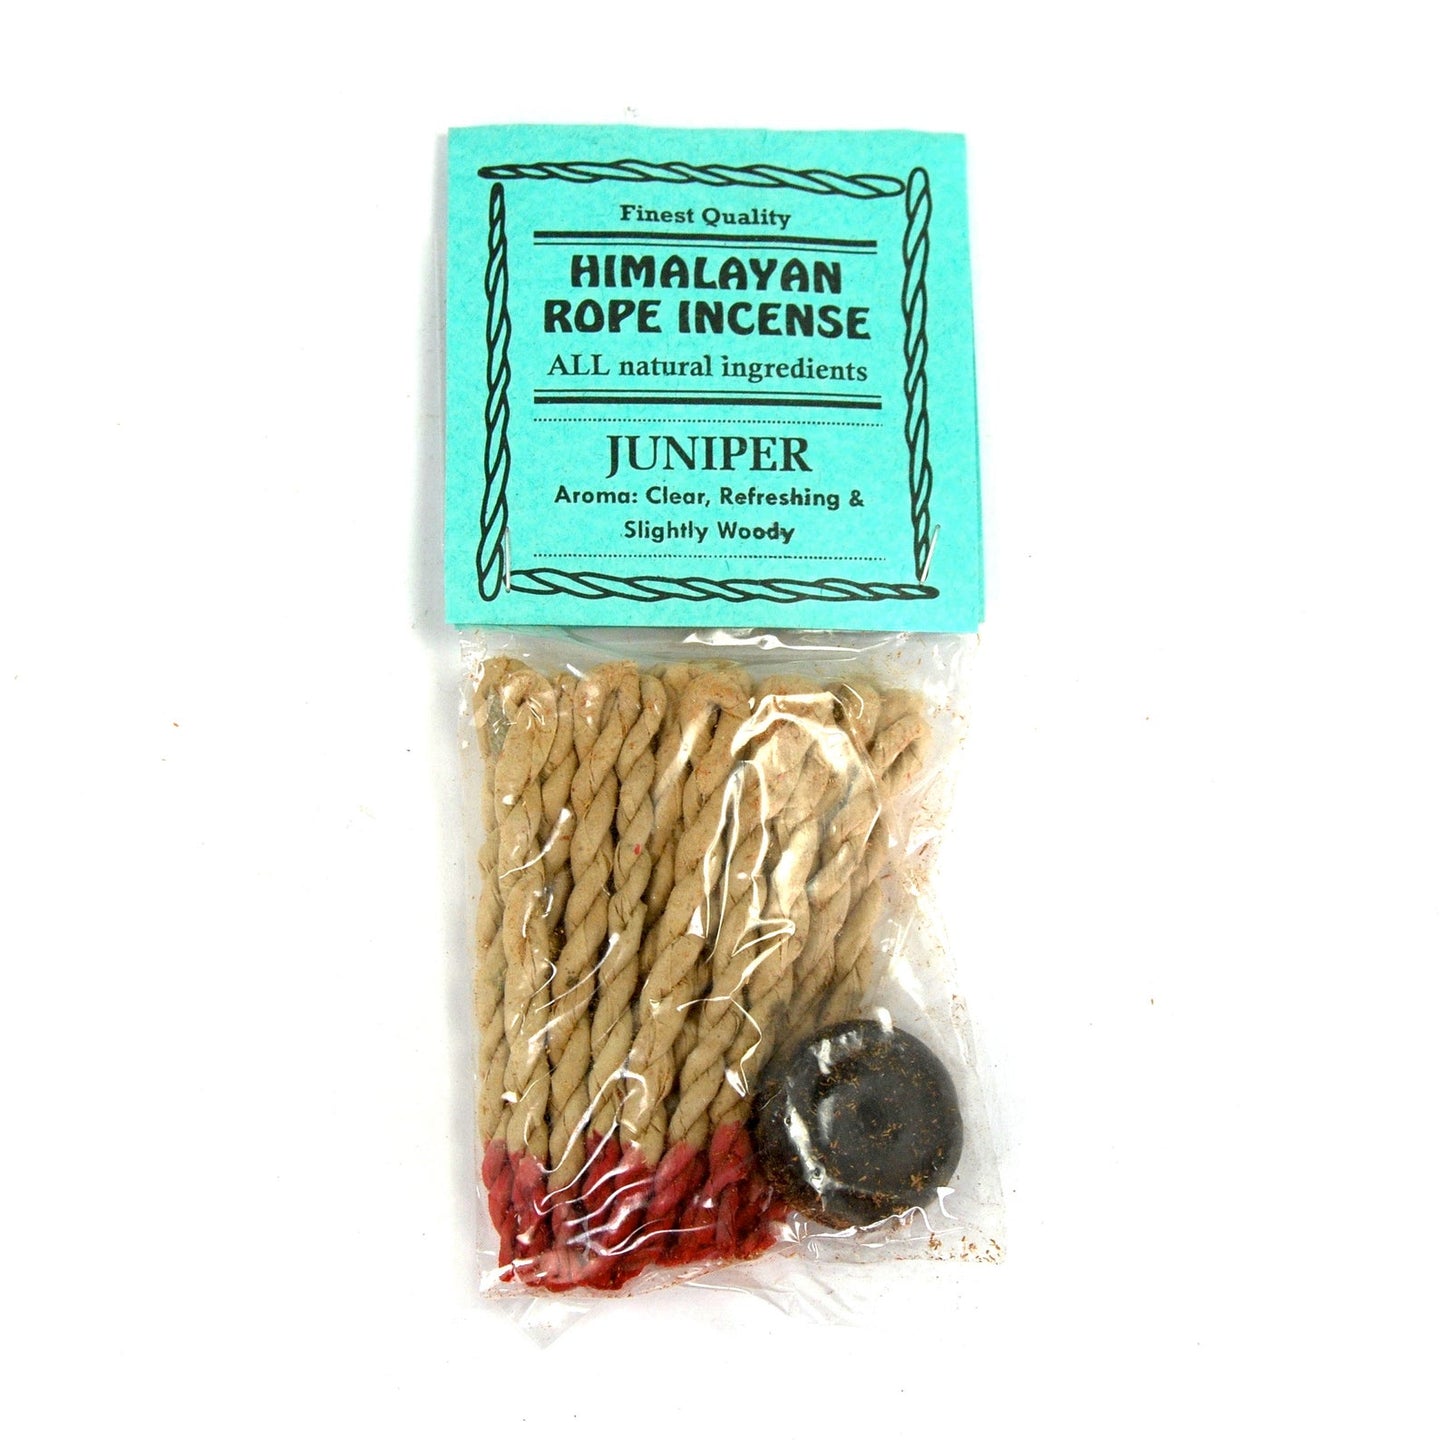 JUNIPER Himalayan Rope Incense Herbal All Natural 20 Ropes Bundle with Burner Tibetan